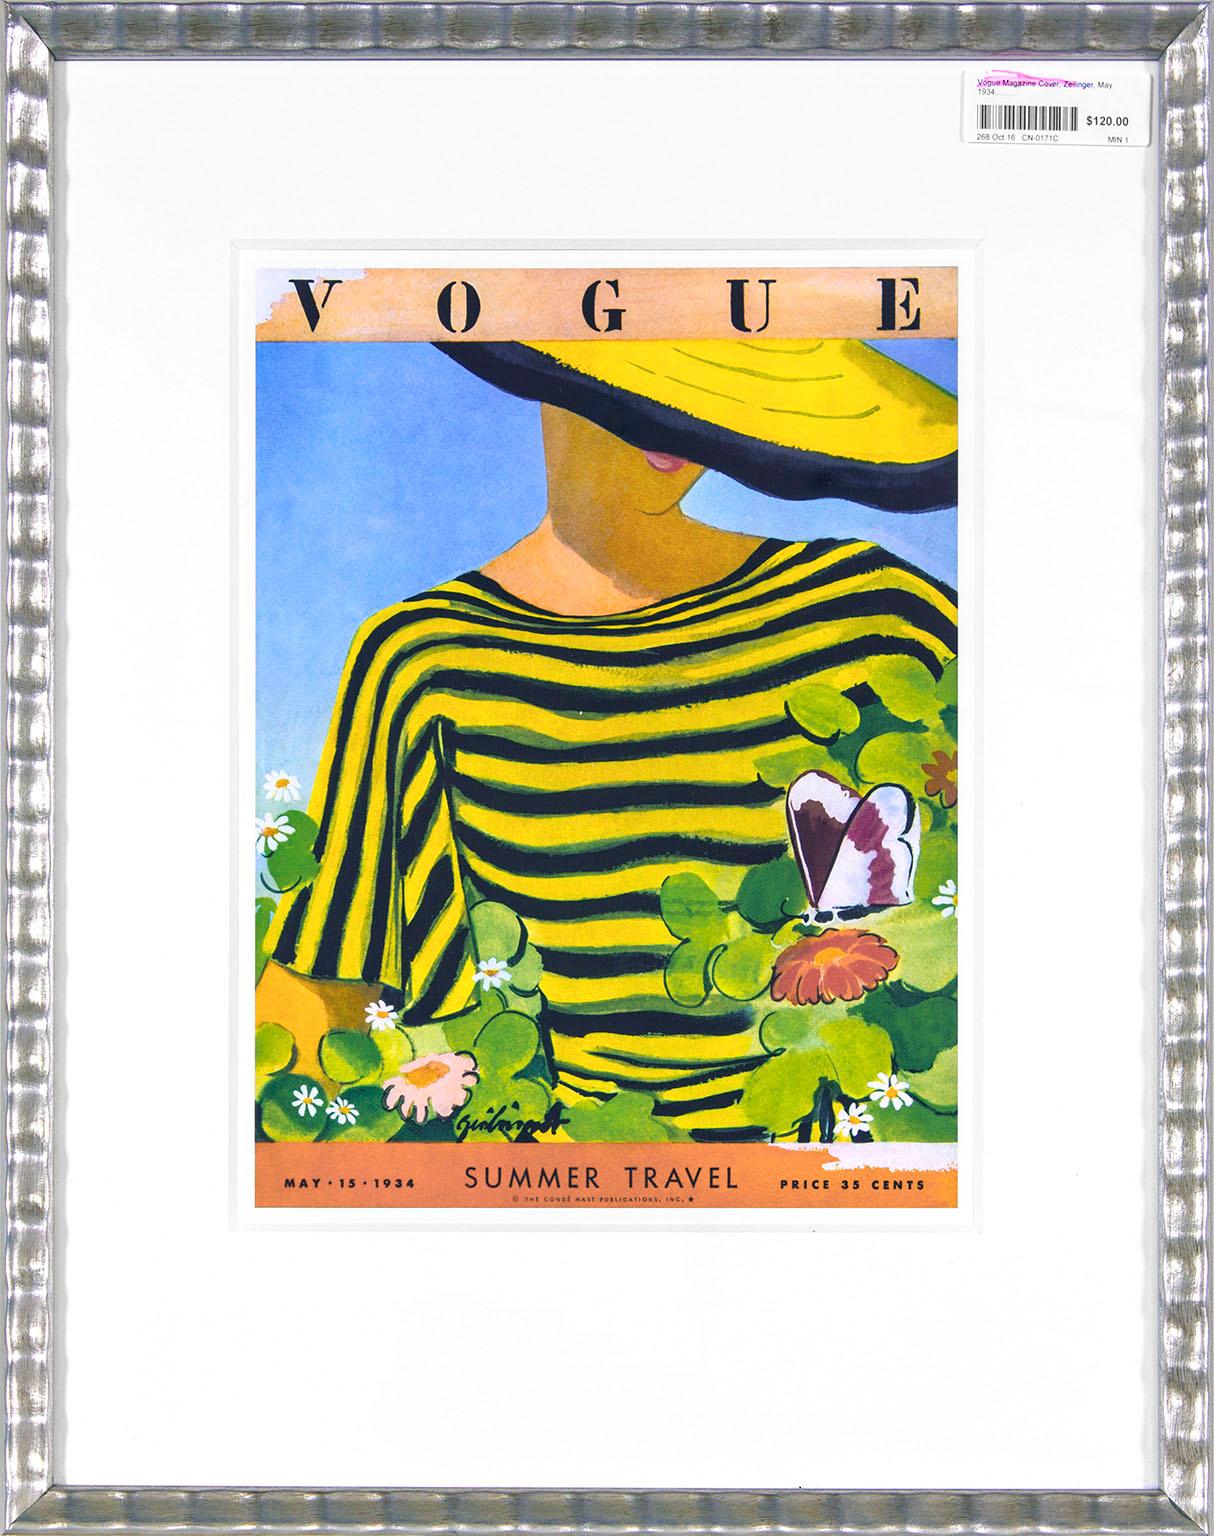 Gerahmter Druck des Titelblatts der Zeitschrift "Vogue" vom 15. Mai 1934 von Alix Zeilinger für die Sommerreise-Ausgabe, auf dem eine Frau mit gelbem Hut und schwarz-gelben Streifen zu sehen ist, die einen Schmetterling auf einer Blume betrachtet.